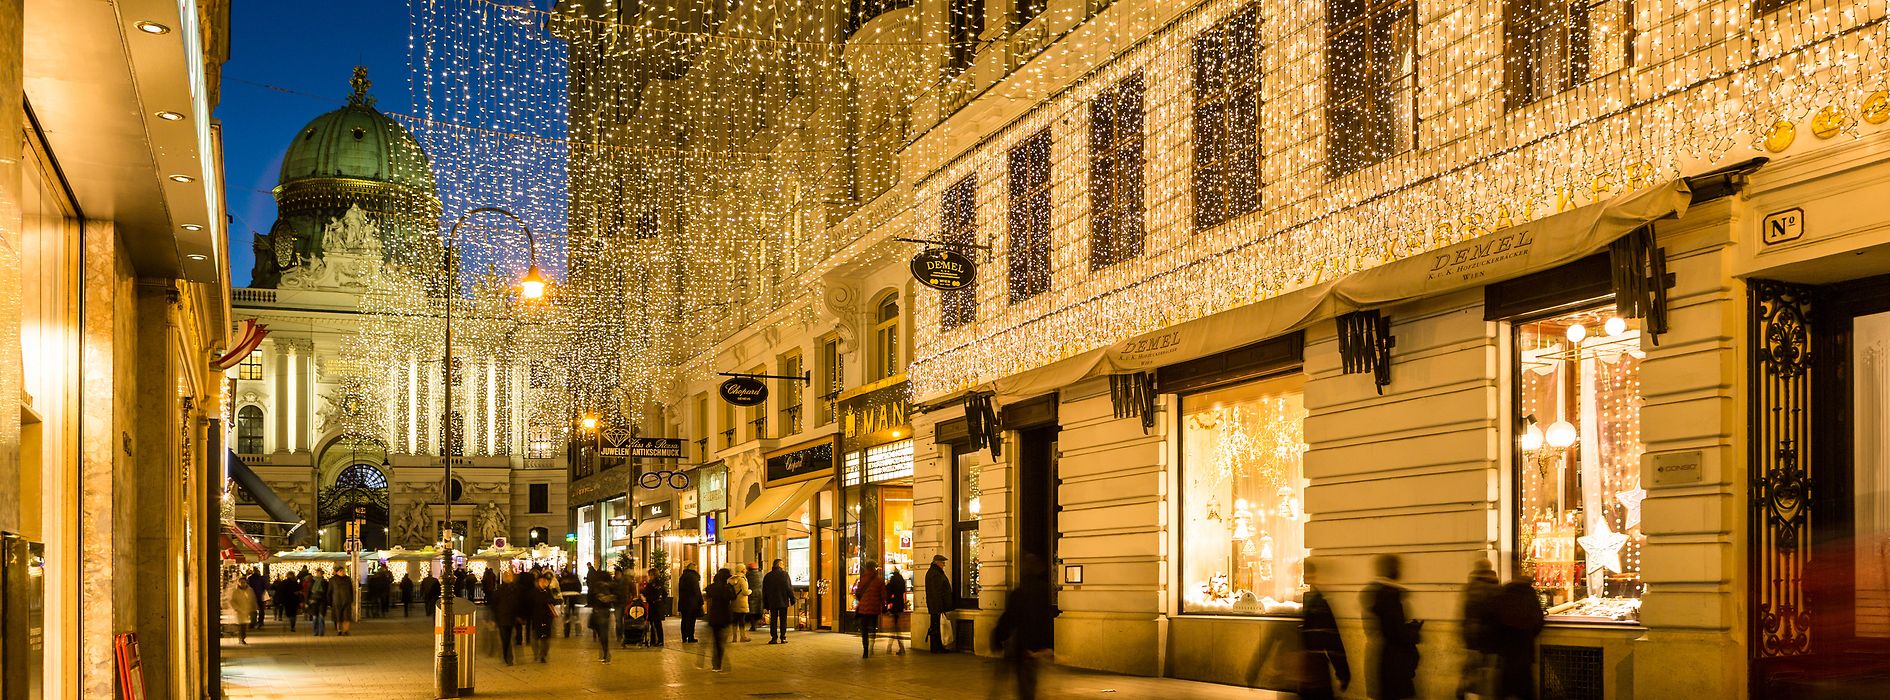 Navidad en Viena - Iluminación navideña en el Kohlmarkt